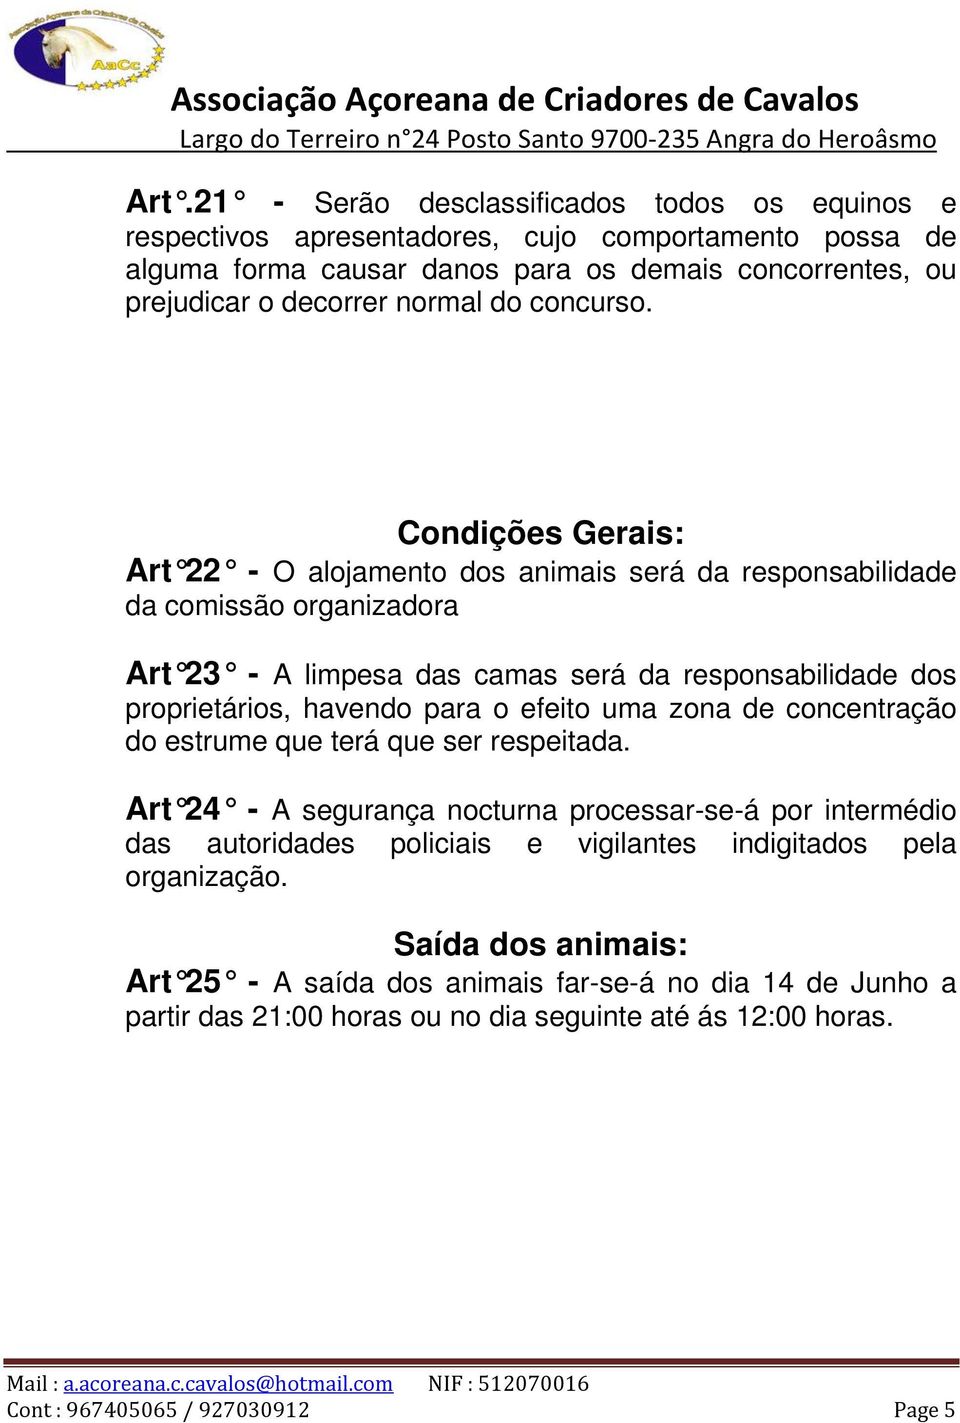 Condições Gerais: Art 22 - O alojamento dos animais será da responsabilidade da comissão organizadora Art 23 - A limpesa das camas será da responsabilidade dos proprietários, havendo para o